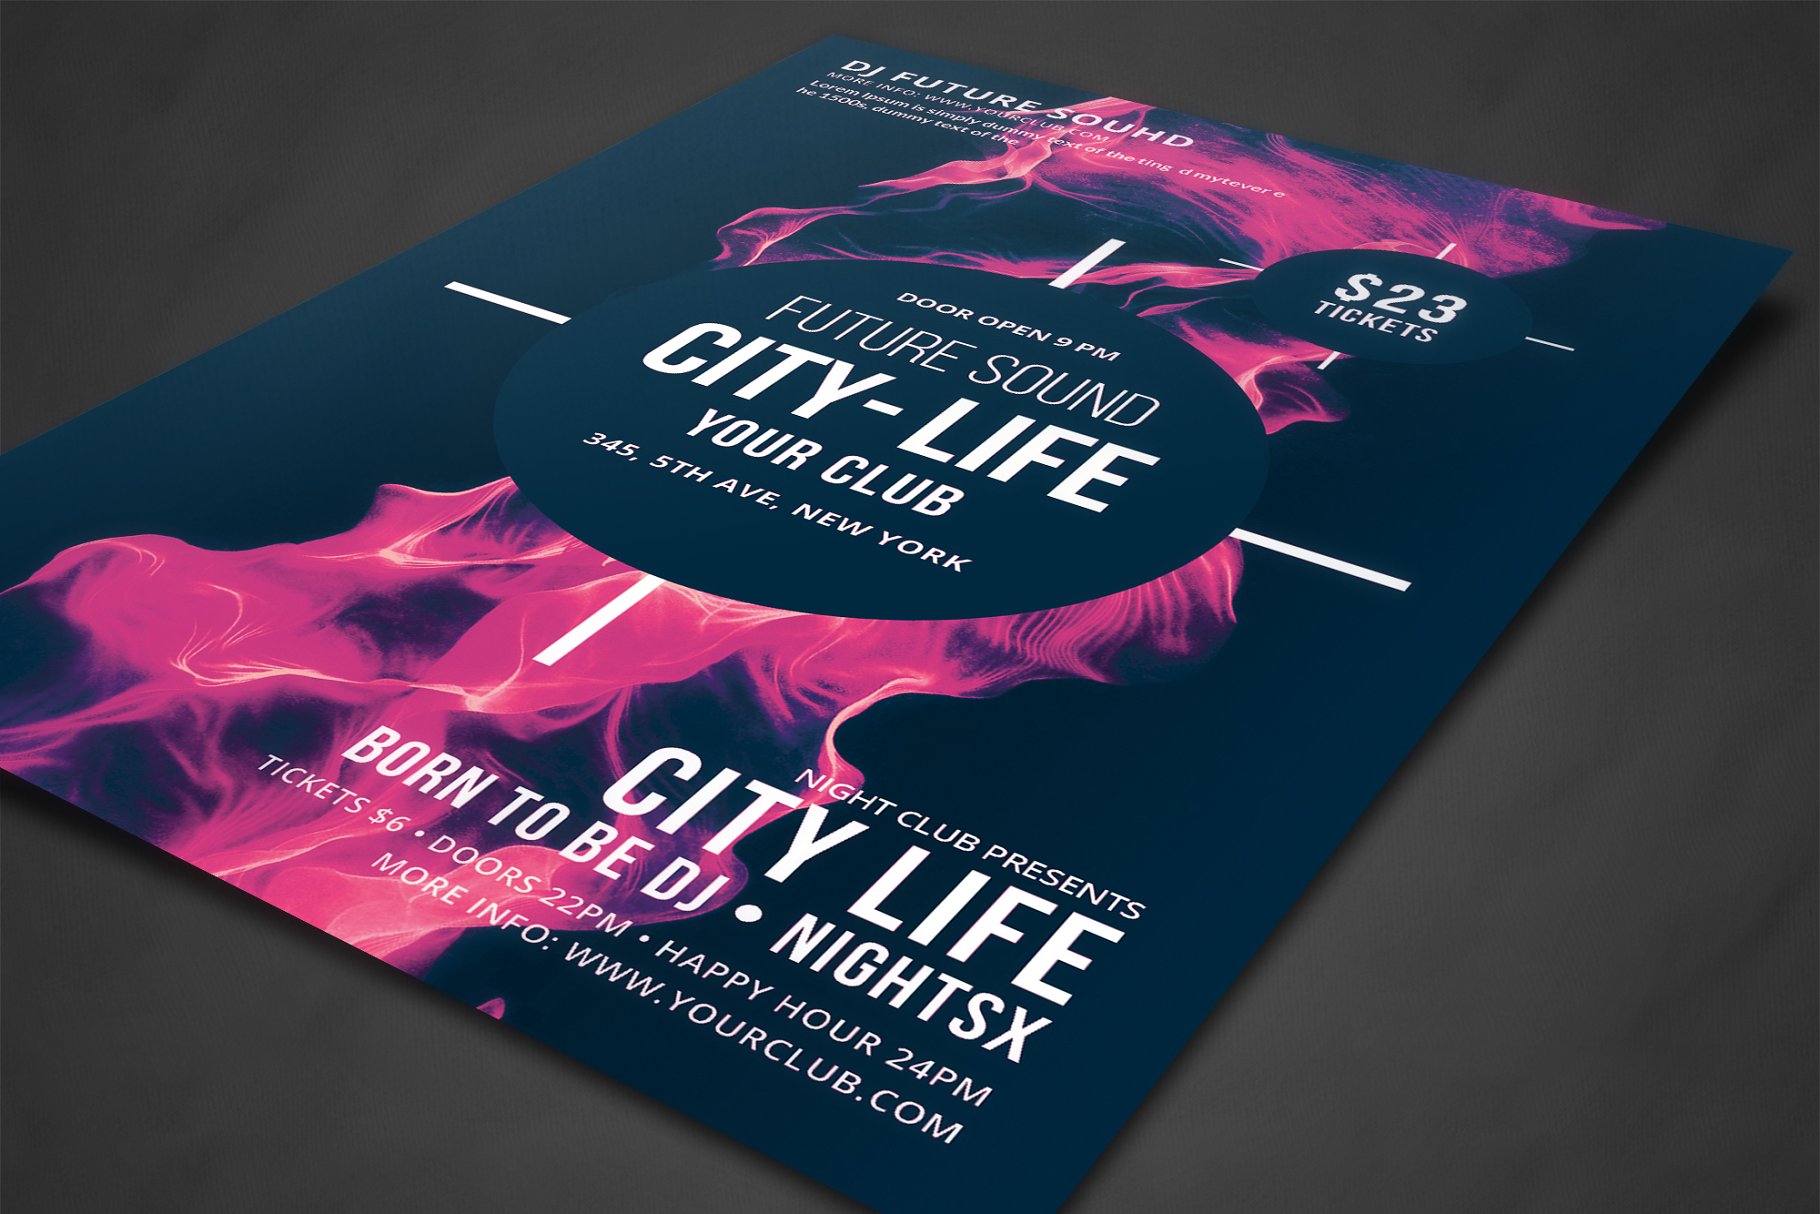 未来音乐概念节日音乐会宣传单模板 Futuristic Festival Concert Flyer插图(1)